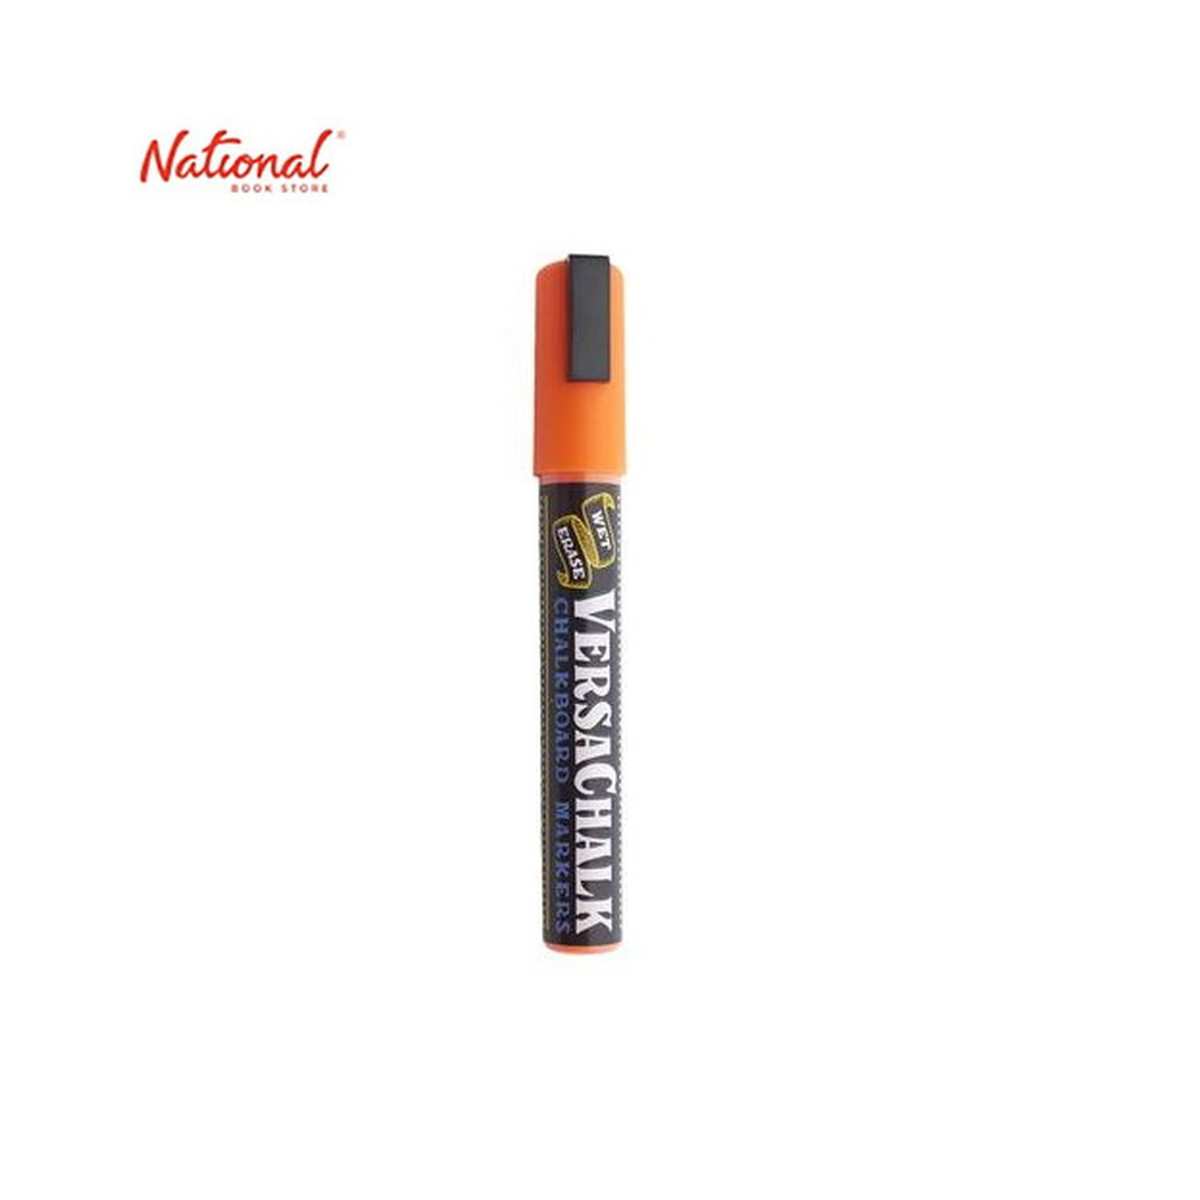 Versachalk Neon Orange Chalk Marker (Bold) Singles